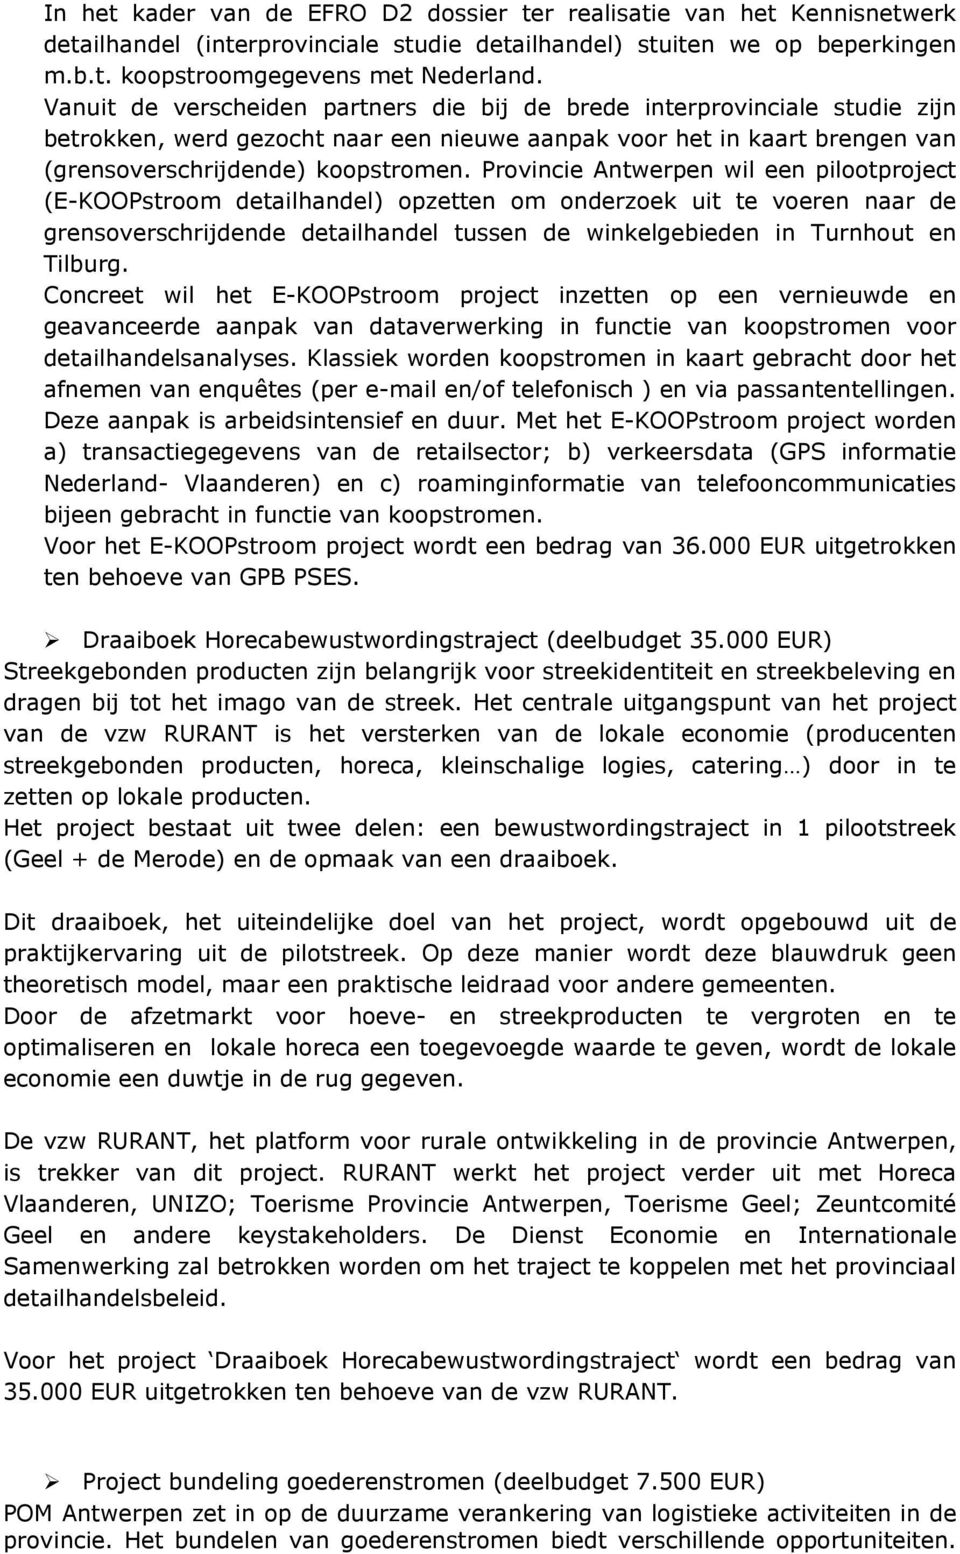 Provincie Antwerpen wil een pilootproject (E-KOOPstroom detailhandel) opzetten om onderzoek uit te voeren naar de grensoverschrijdende detailhandel tussen de winkelgebieden in Turnhout en Tilburg.